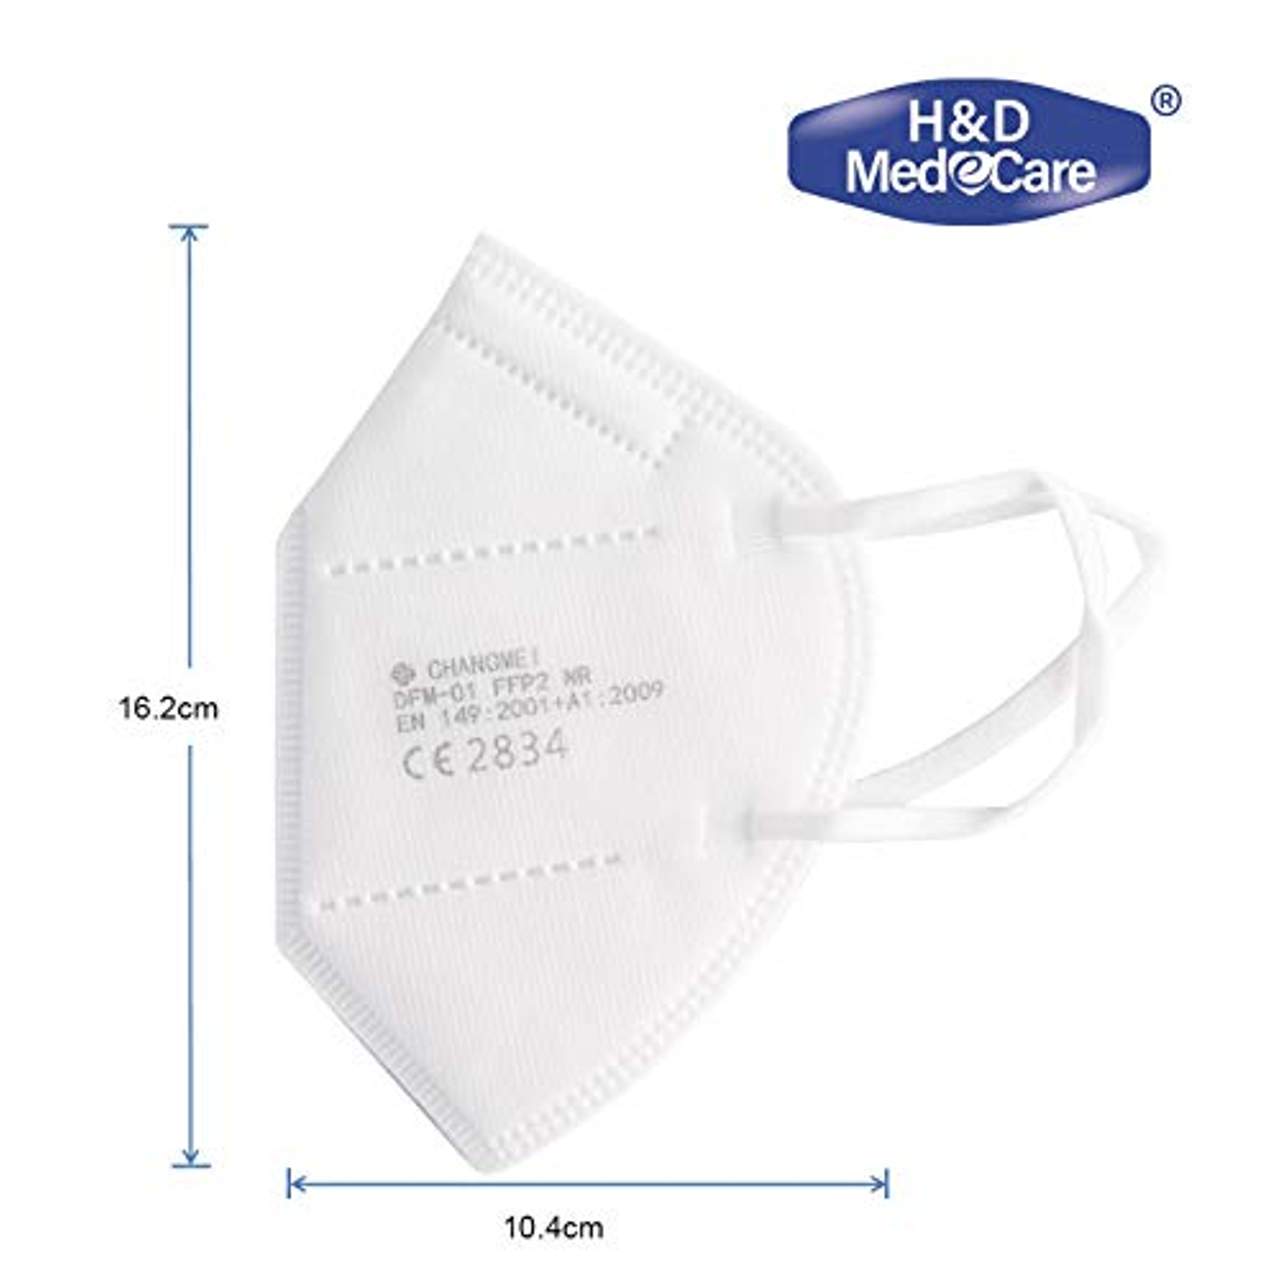 H&D MedeCare HDCM02 Atemschutzmasken FFP2 NR Feinstaubmasken